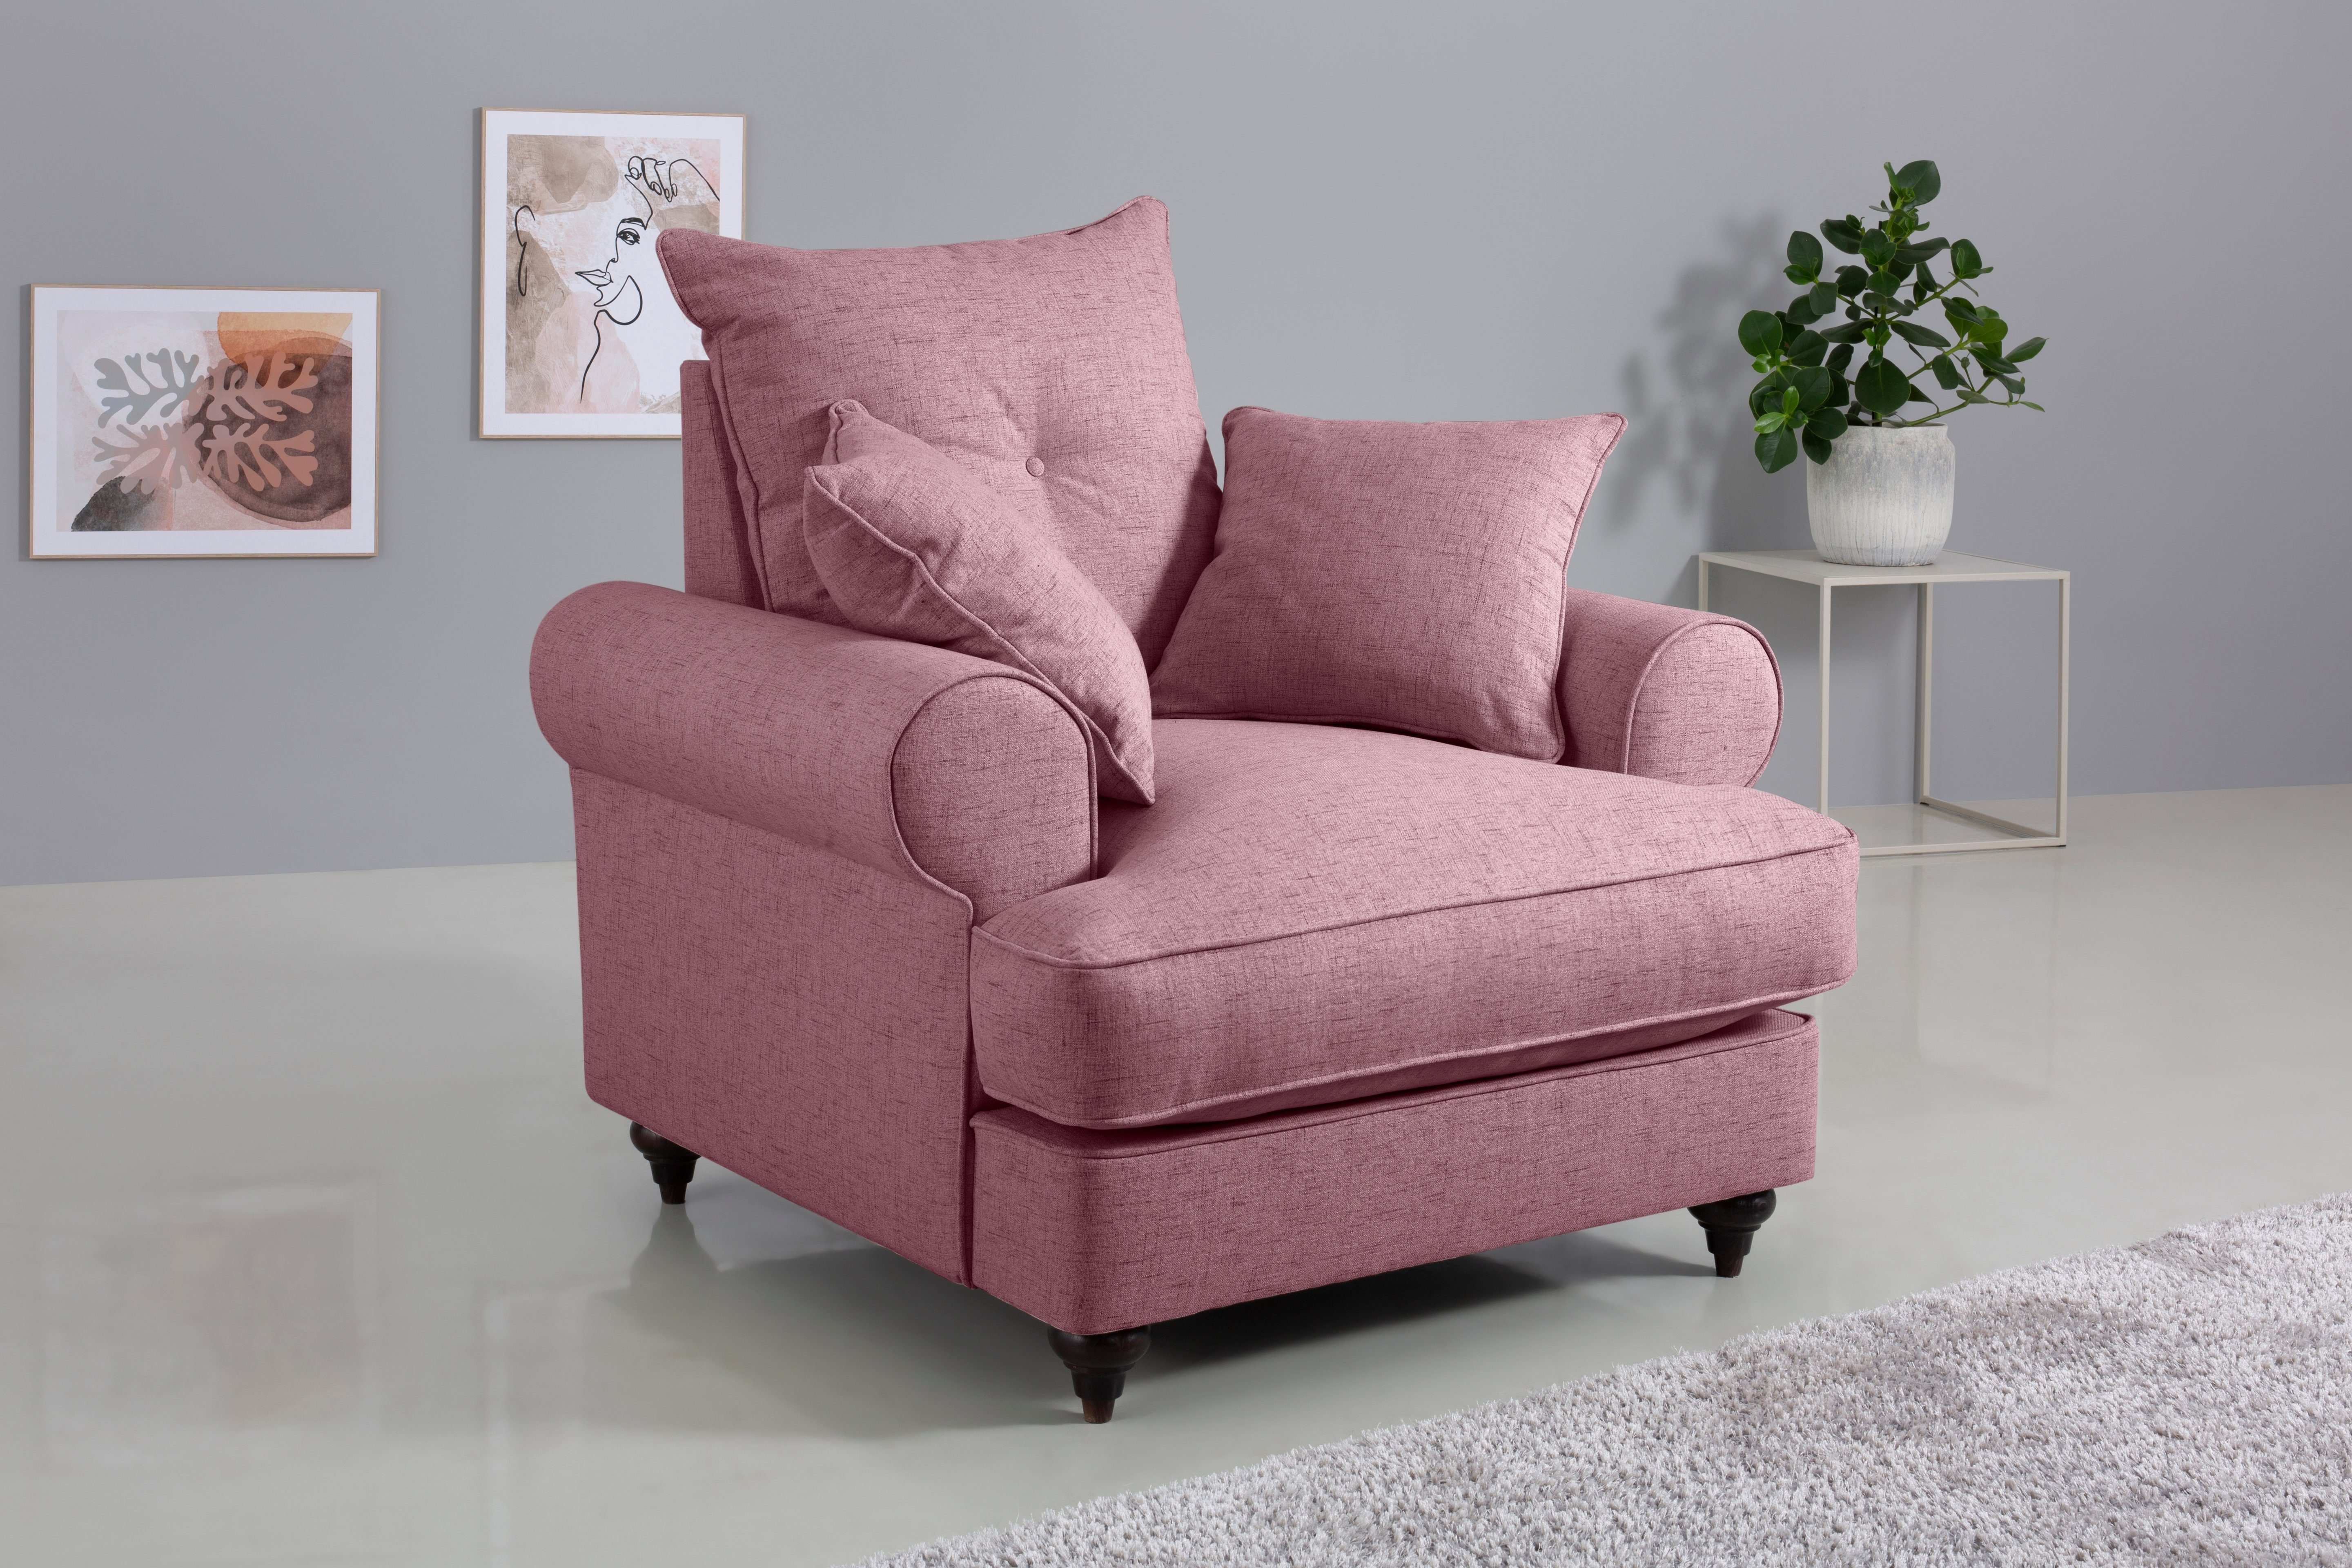 Home affaire Sessel Bloomer, mit hochwertigem Kaltschaum, in verschiedenen Farben erhältlich violet